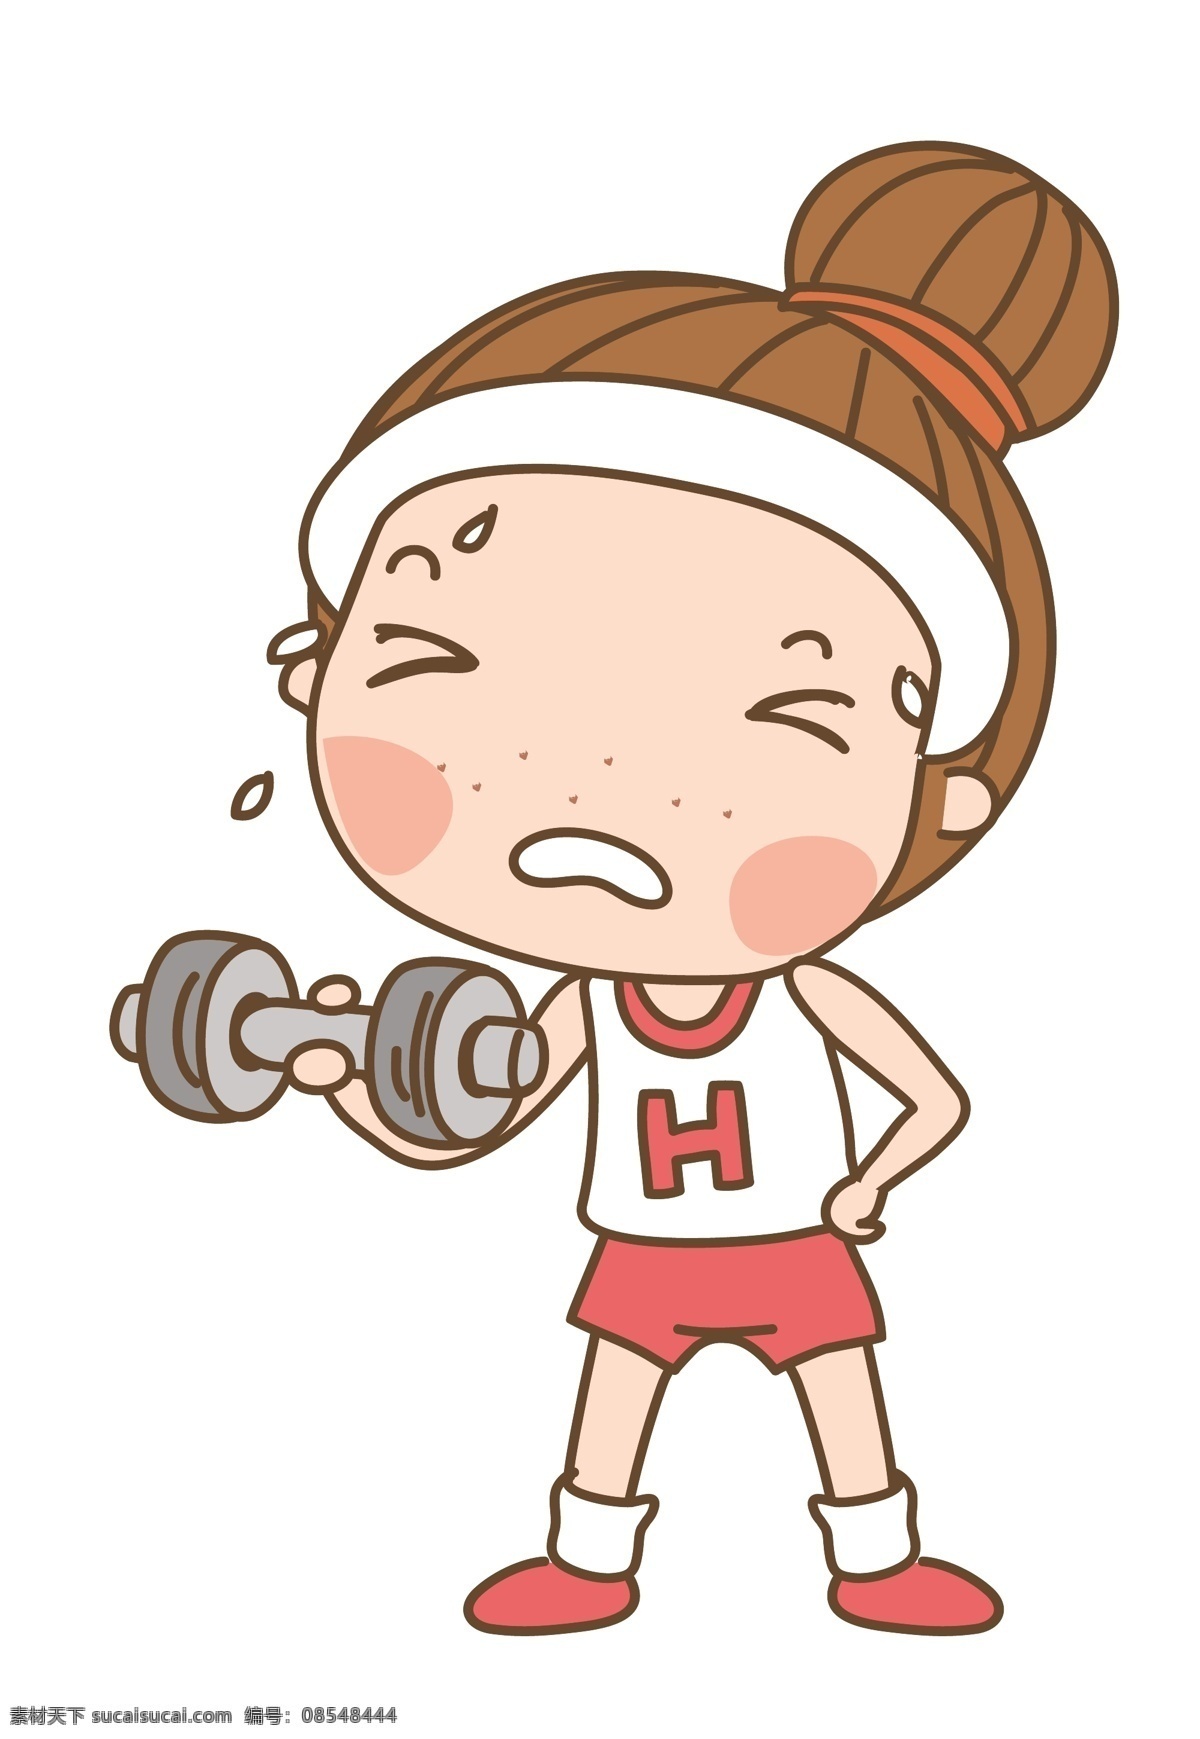 卡通 矢量 锻炼 人物 矢量人物 矢量图 最新 韩国 素材图片 动漫 可爱 eps素材 卡通人物